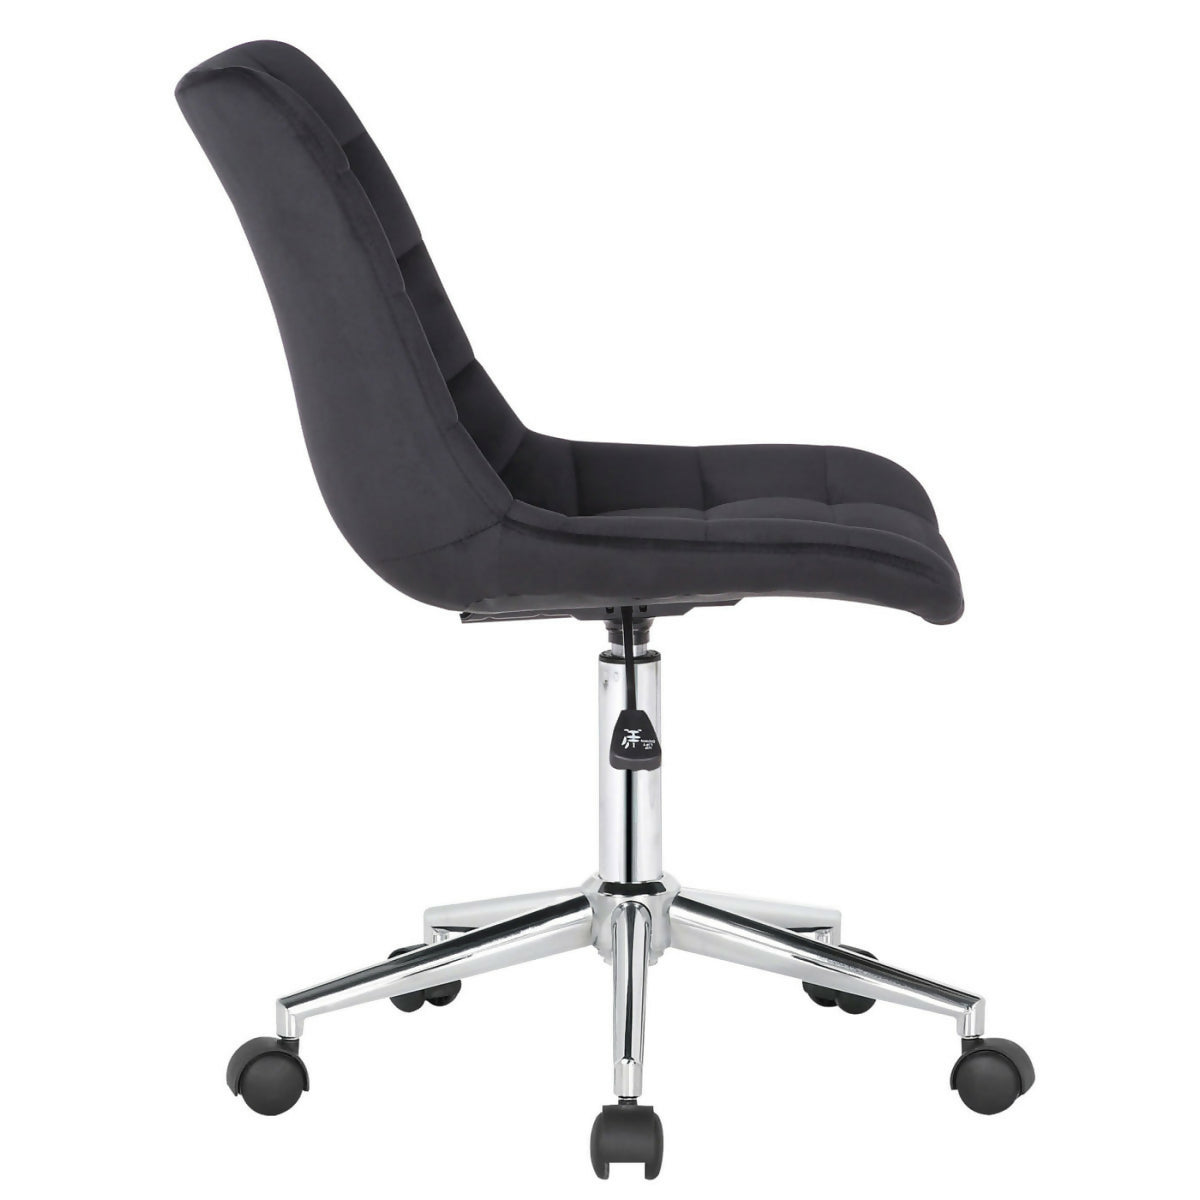 Medford office chair - Black velvet